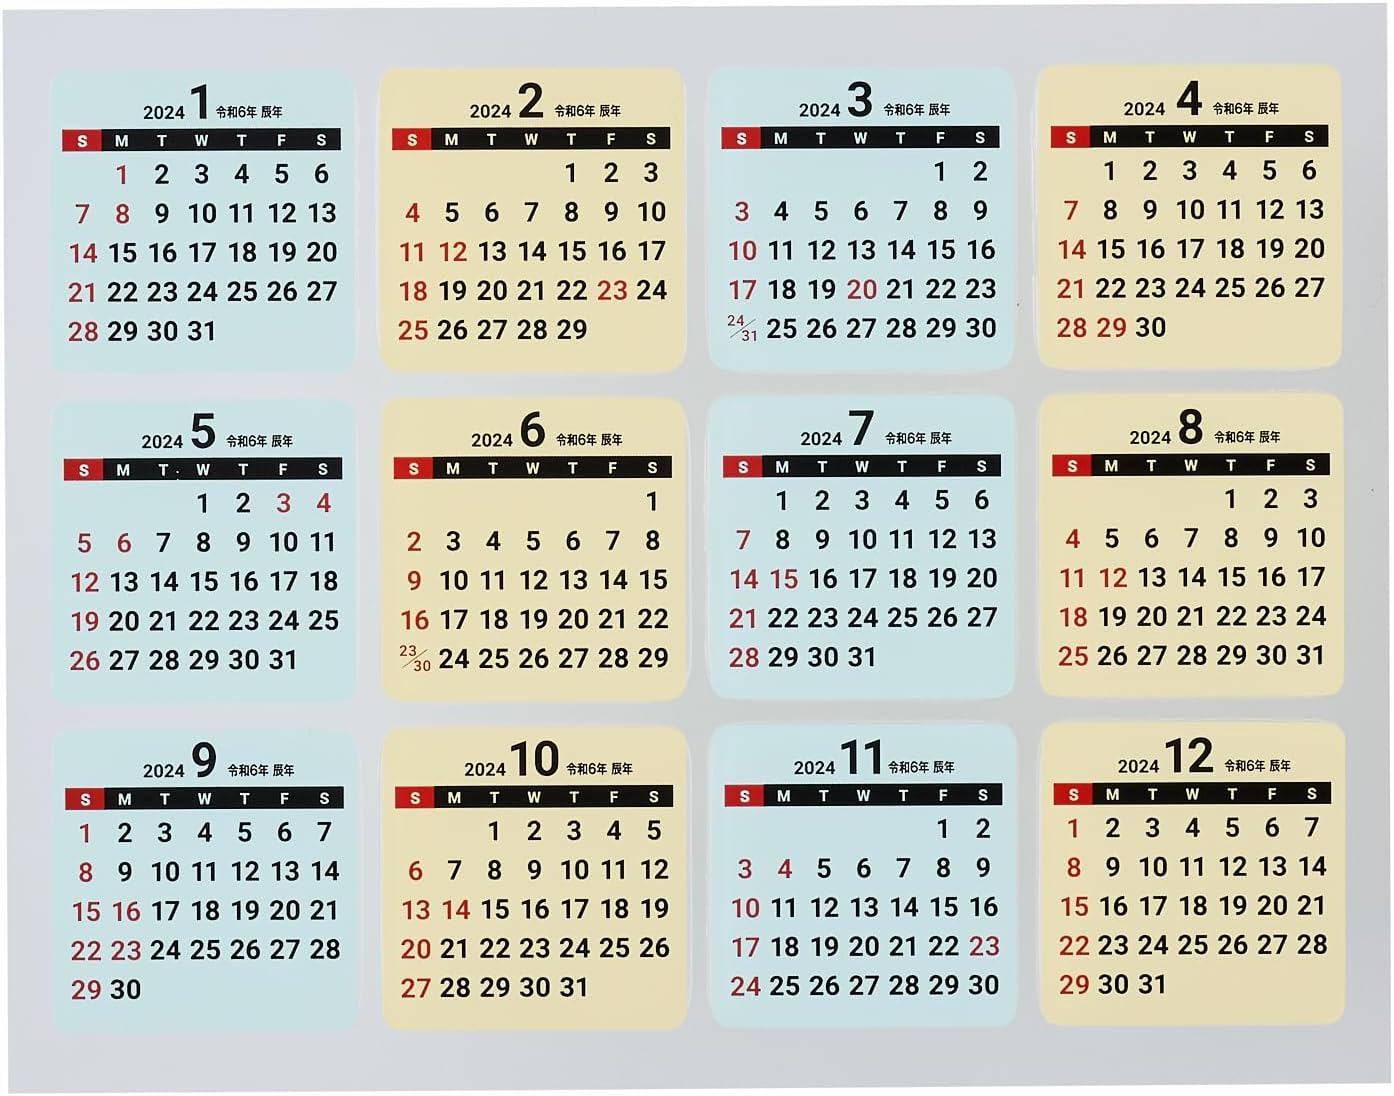 2024 Calendar Sticker